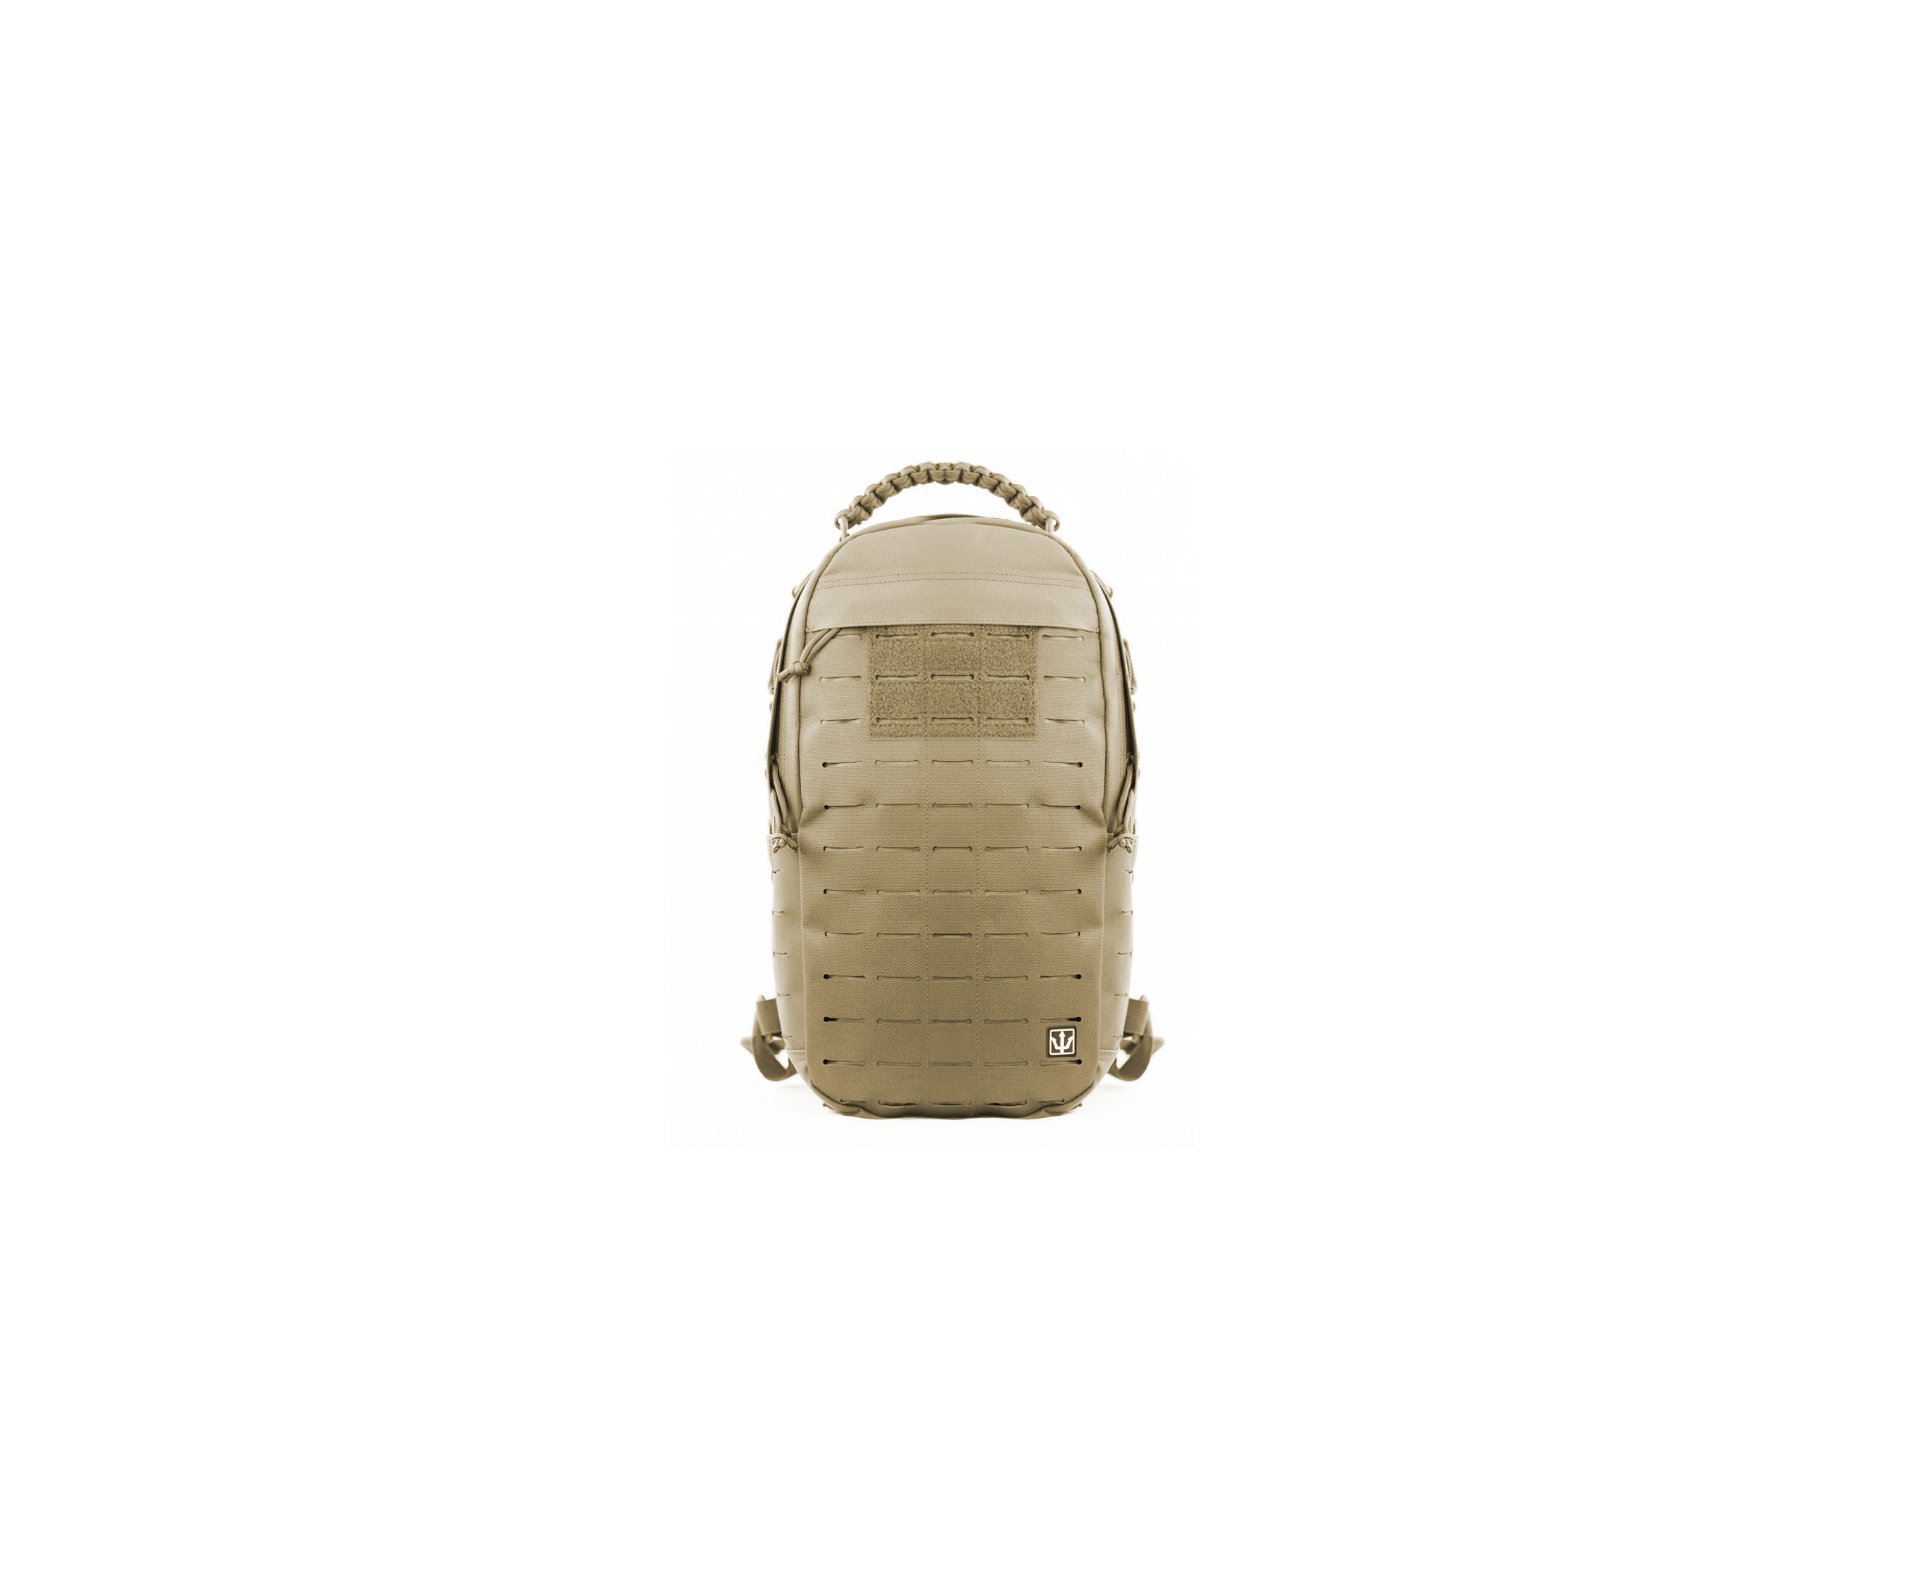 Mochila Evo Tactical - Edc Lite Pack Desert